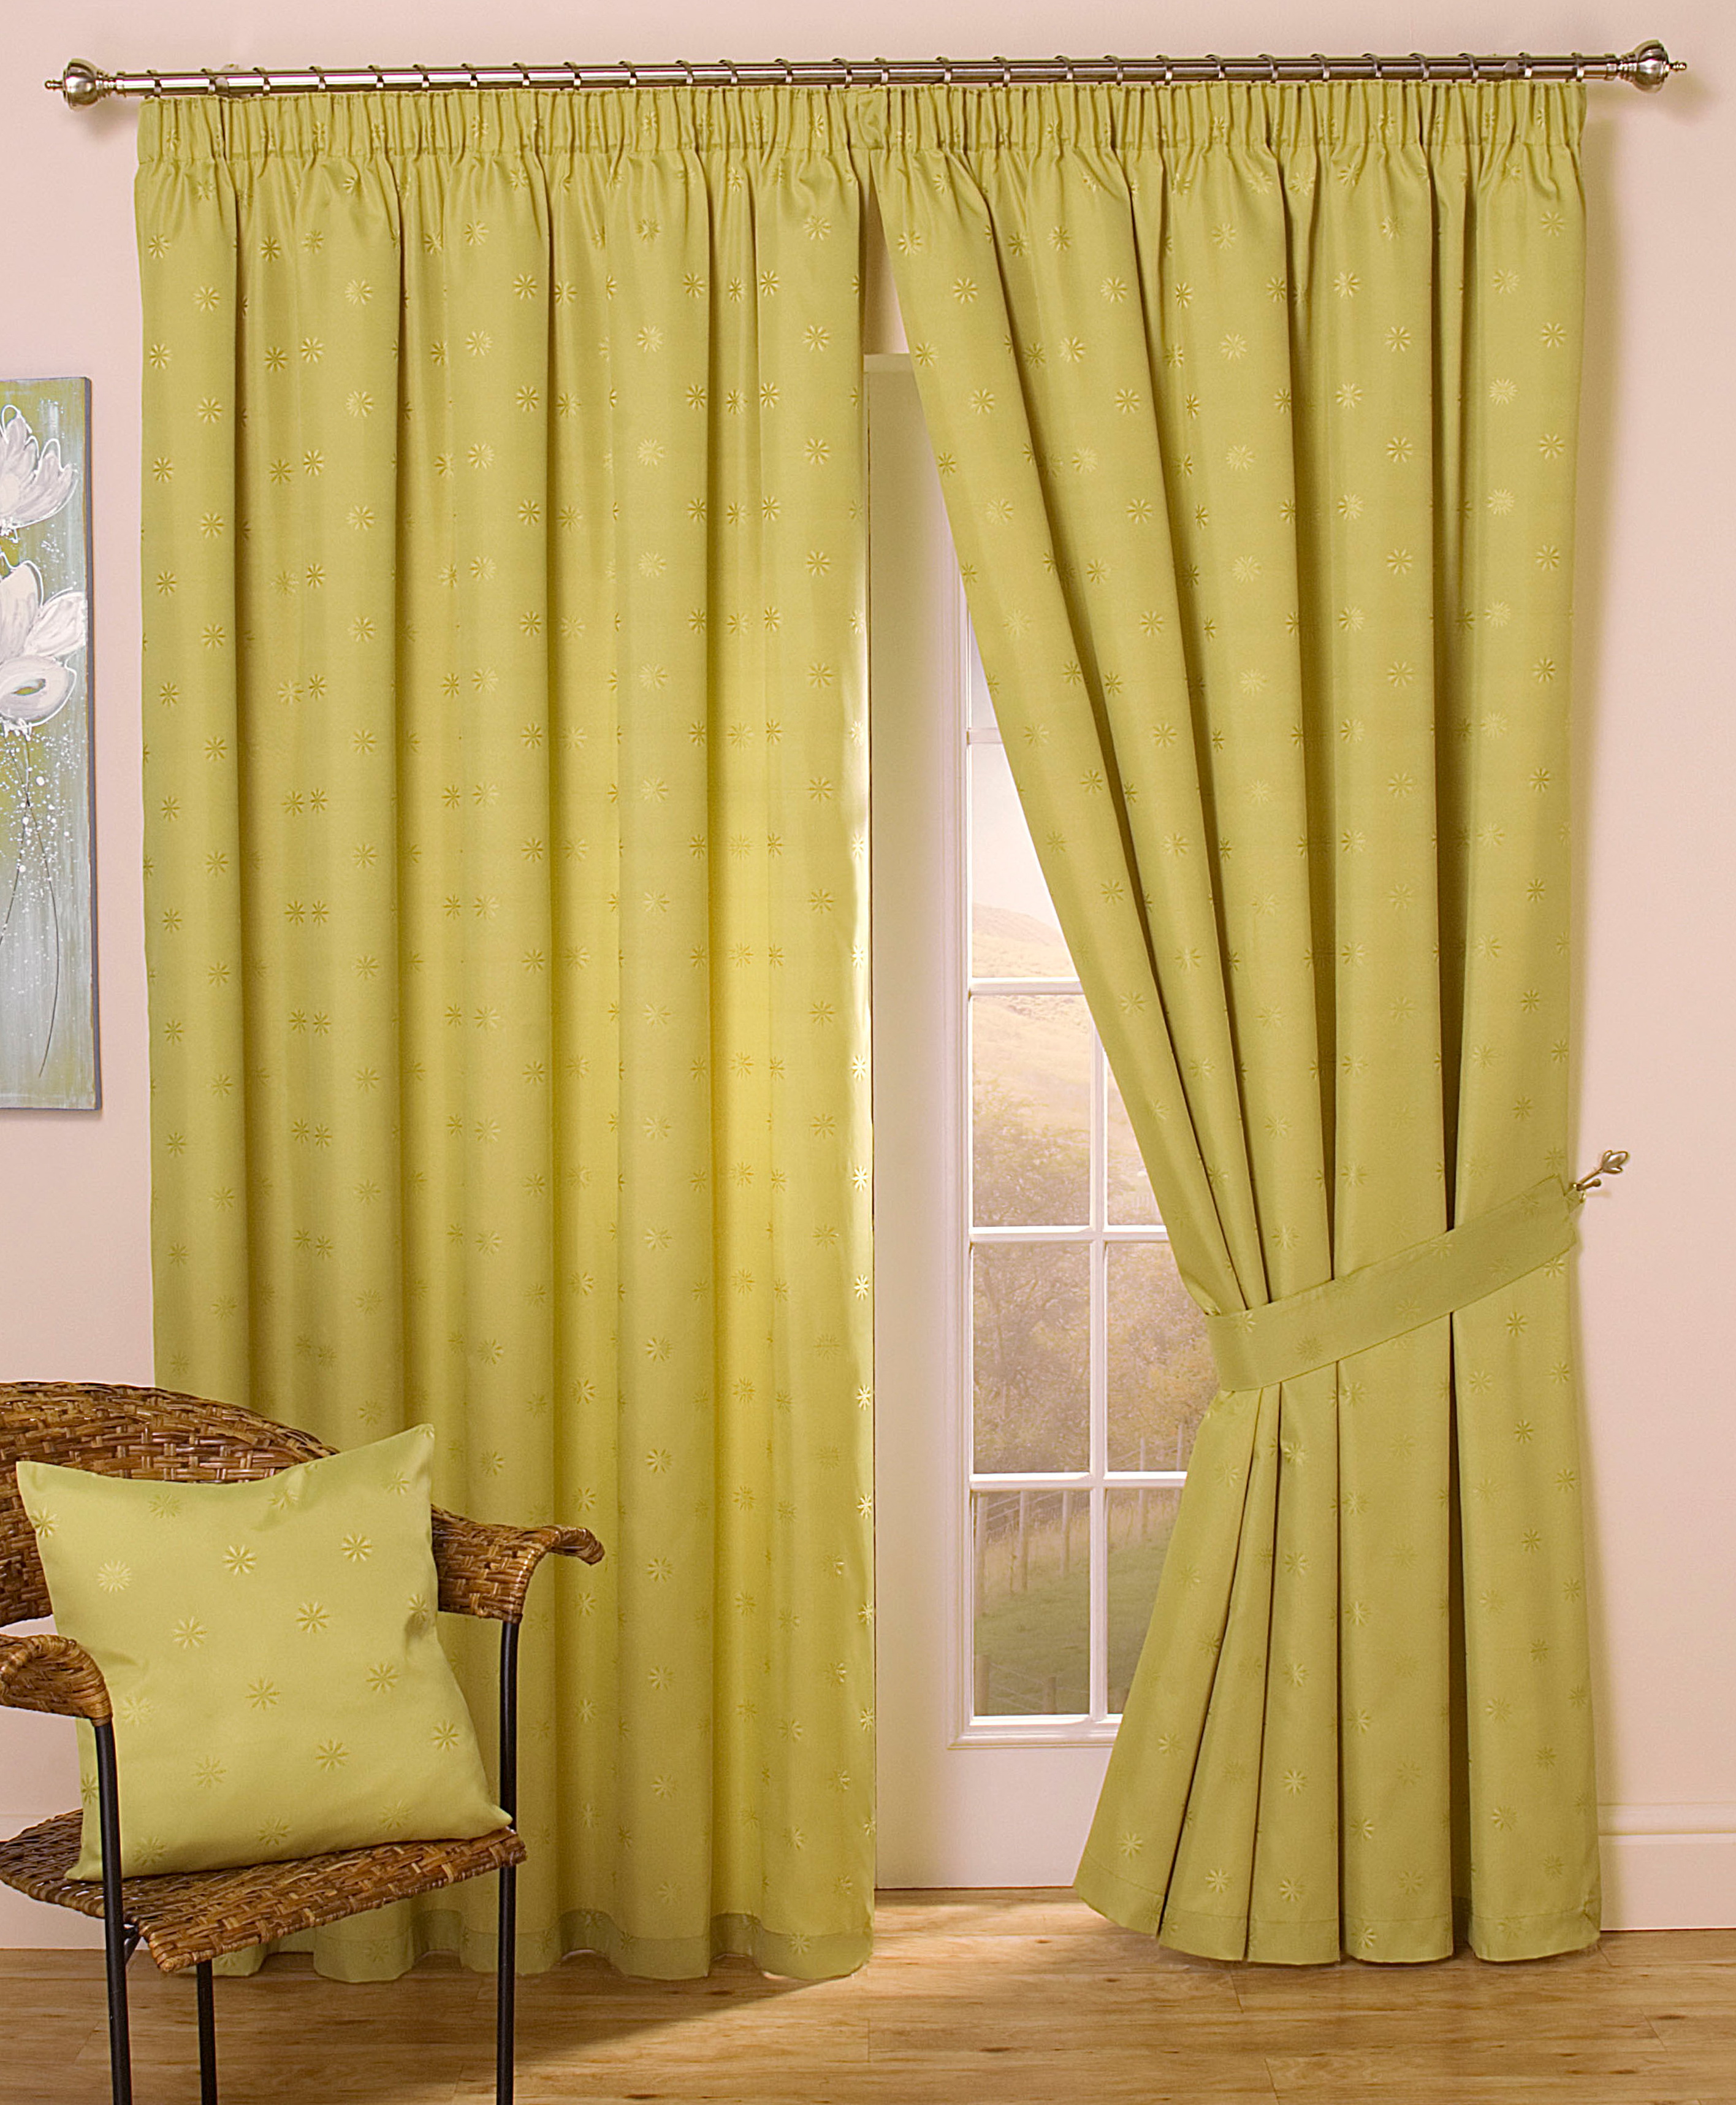 Cheap Curtains For Sale In Durban | Home Design Ideas